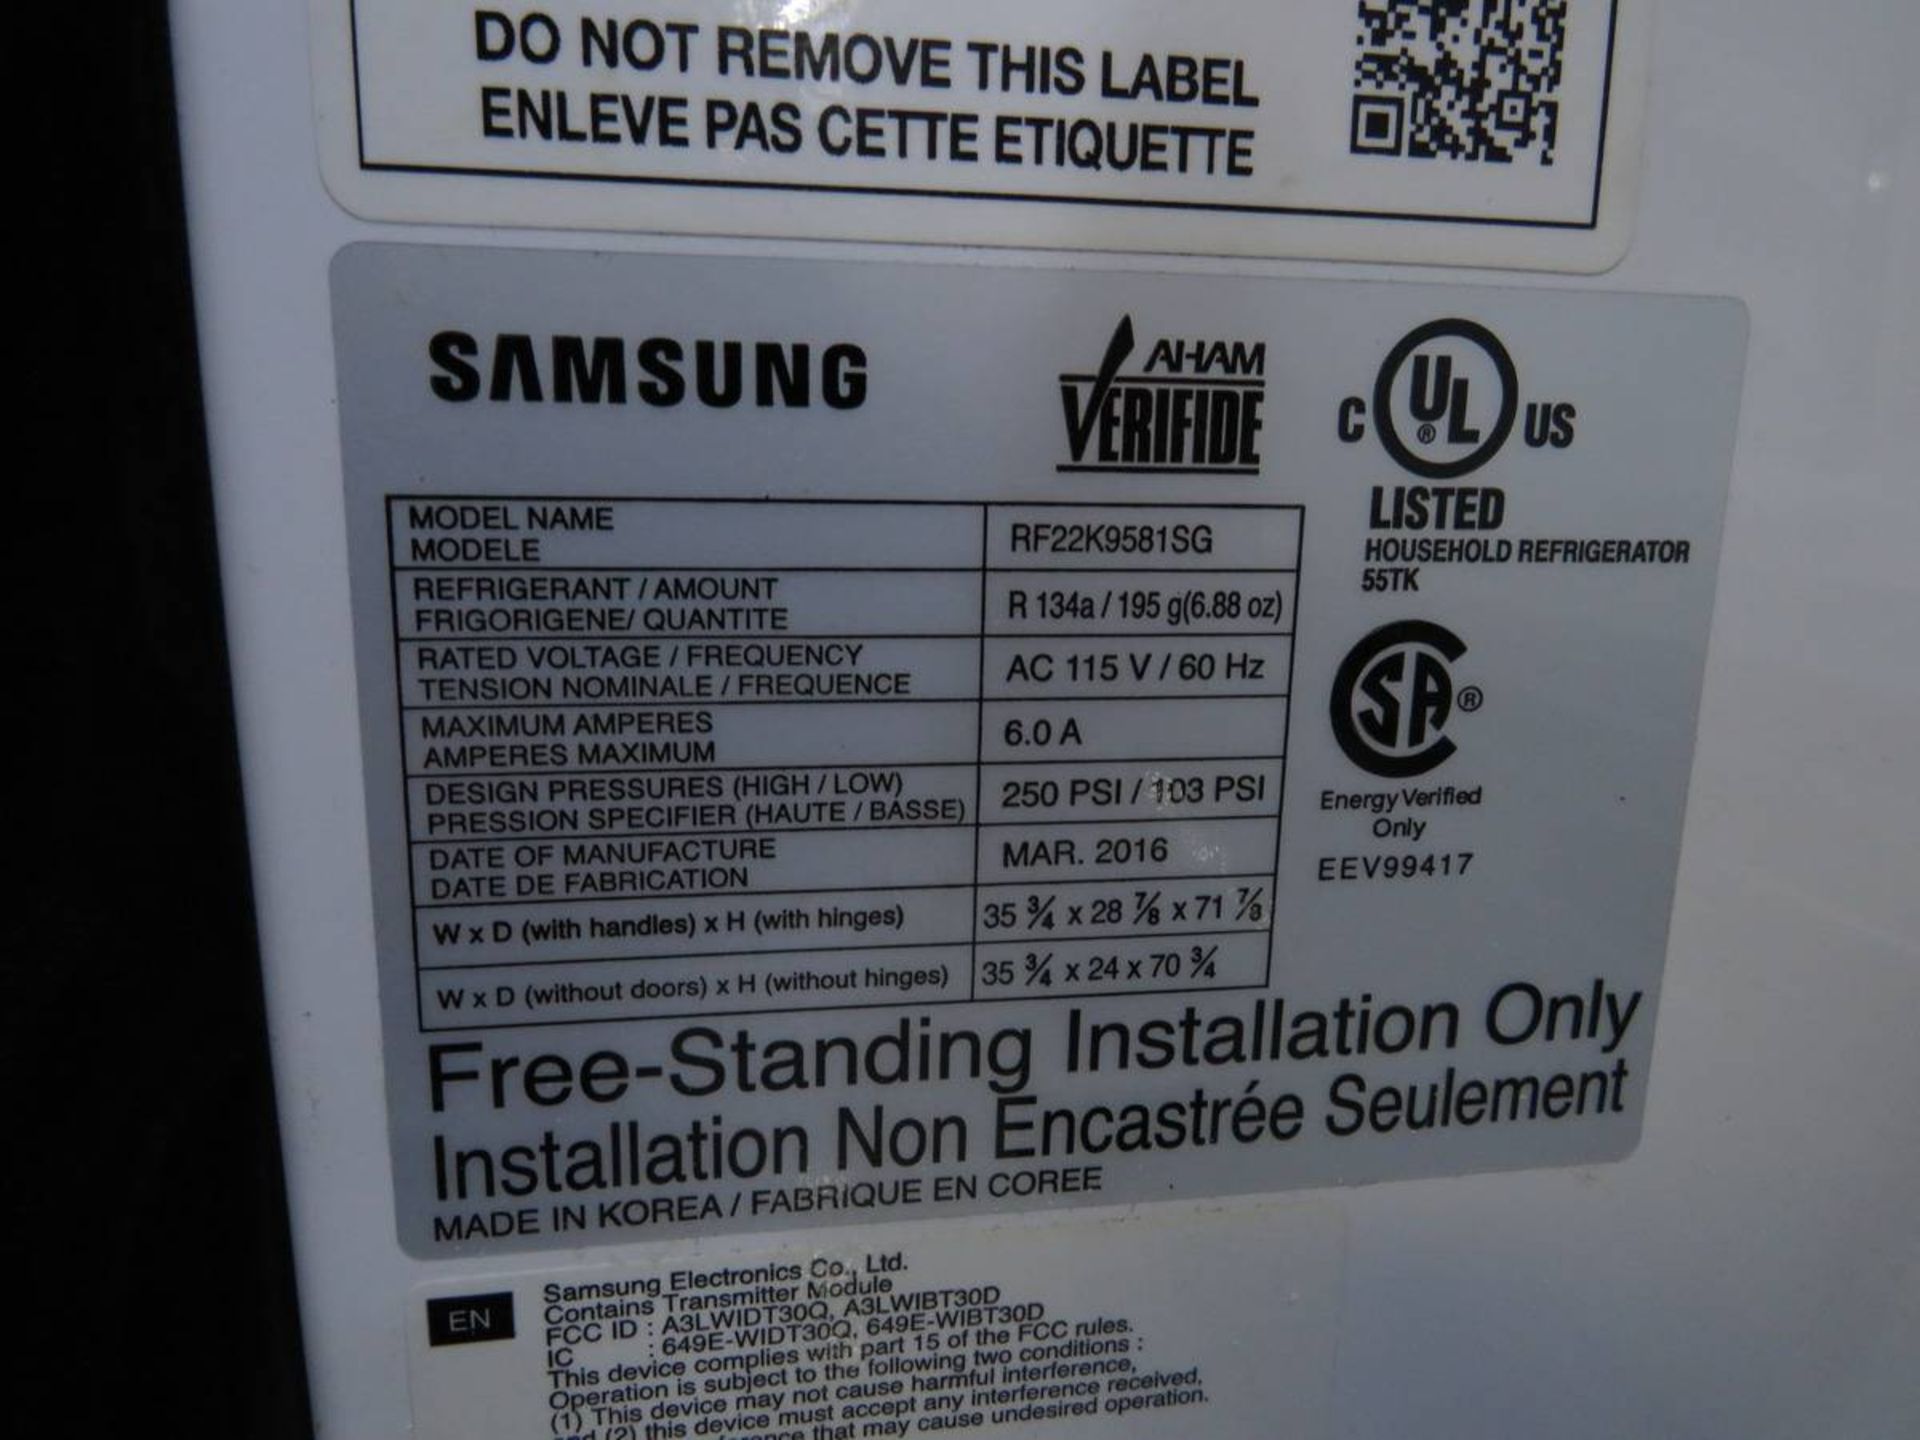 Samsung Double Door Refrigerator / Freezer - Image 2 of 2